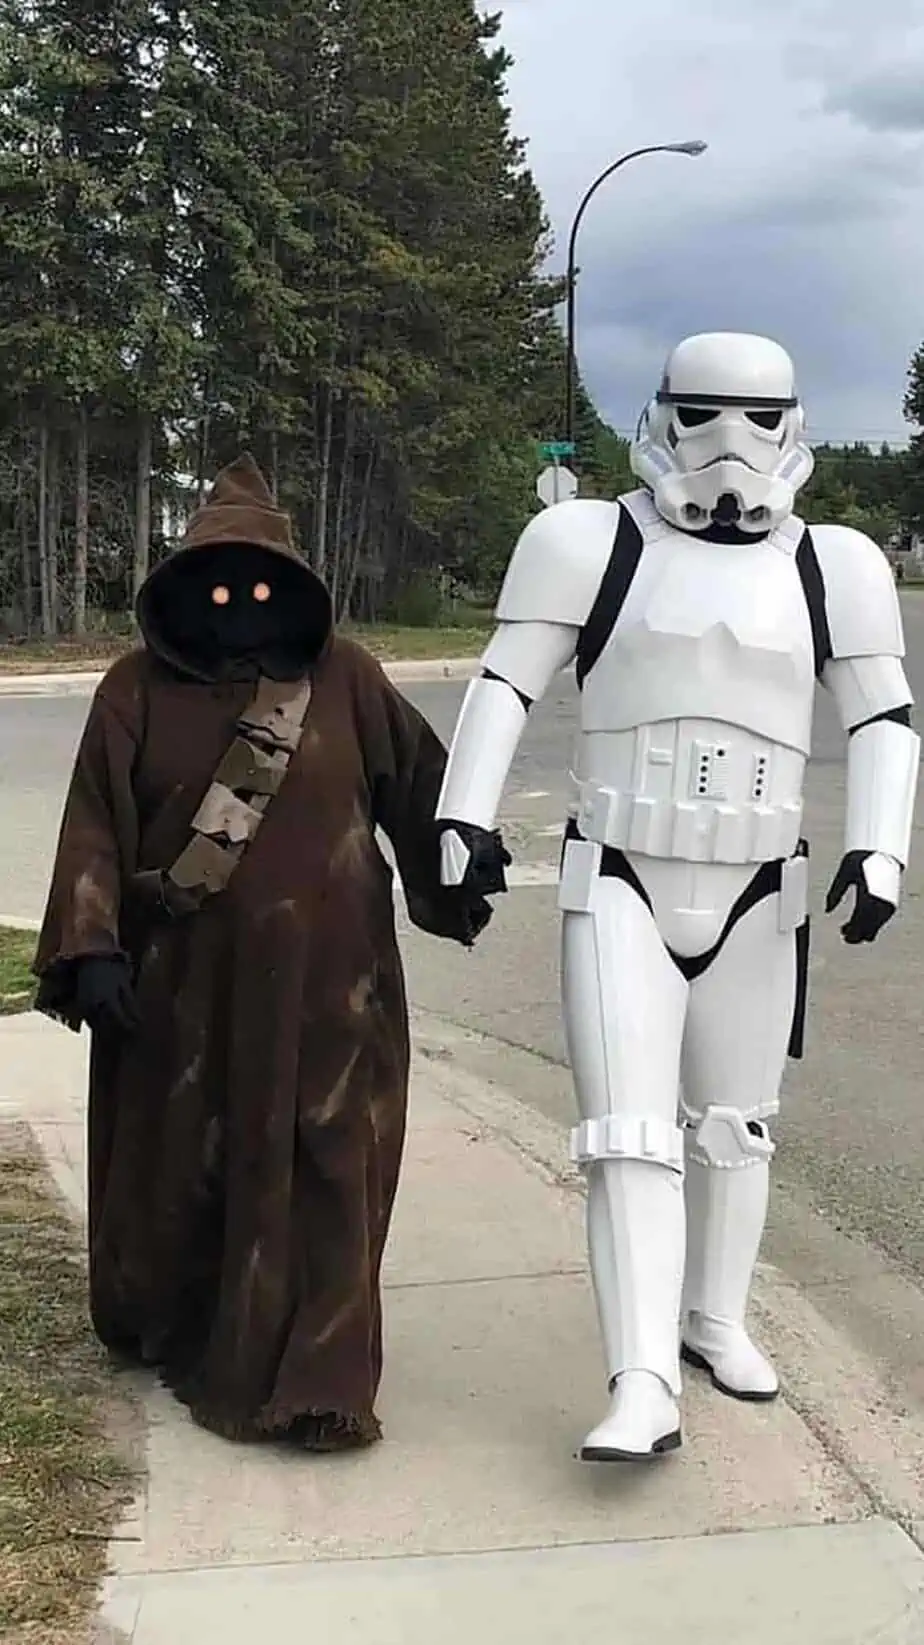 Star wars costumes Jawa & Stormtrooper